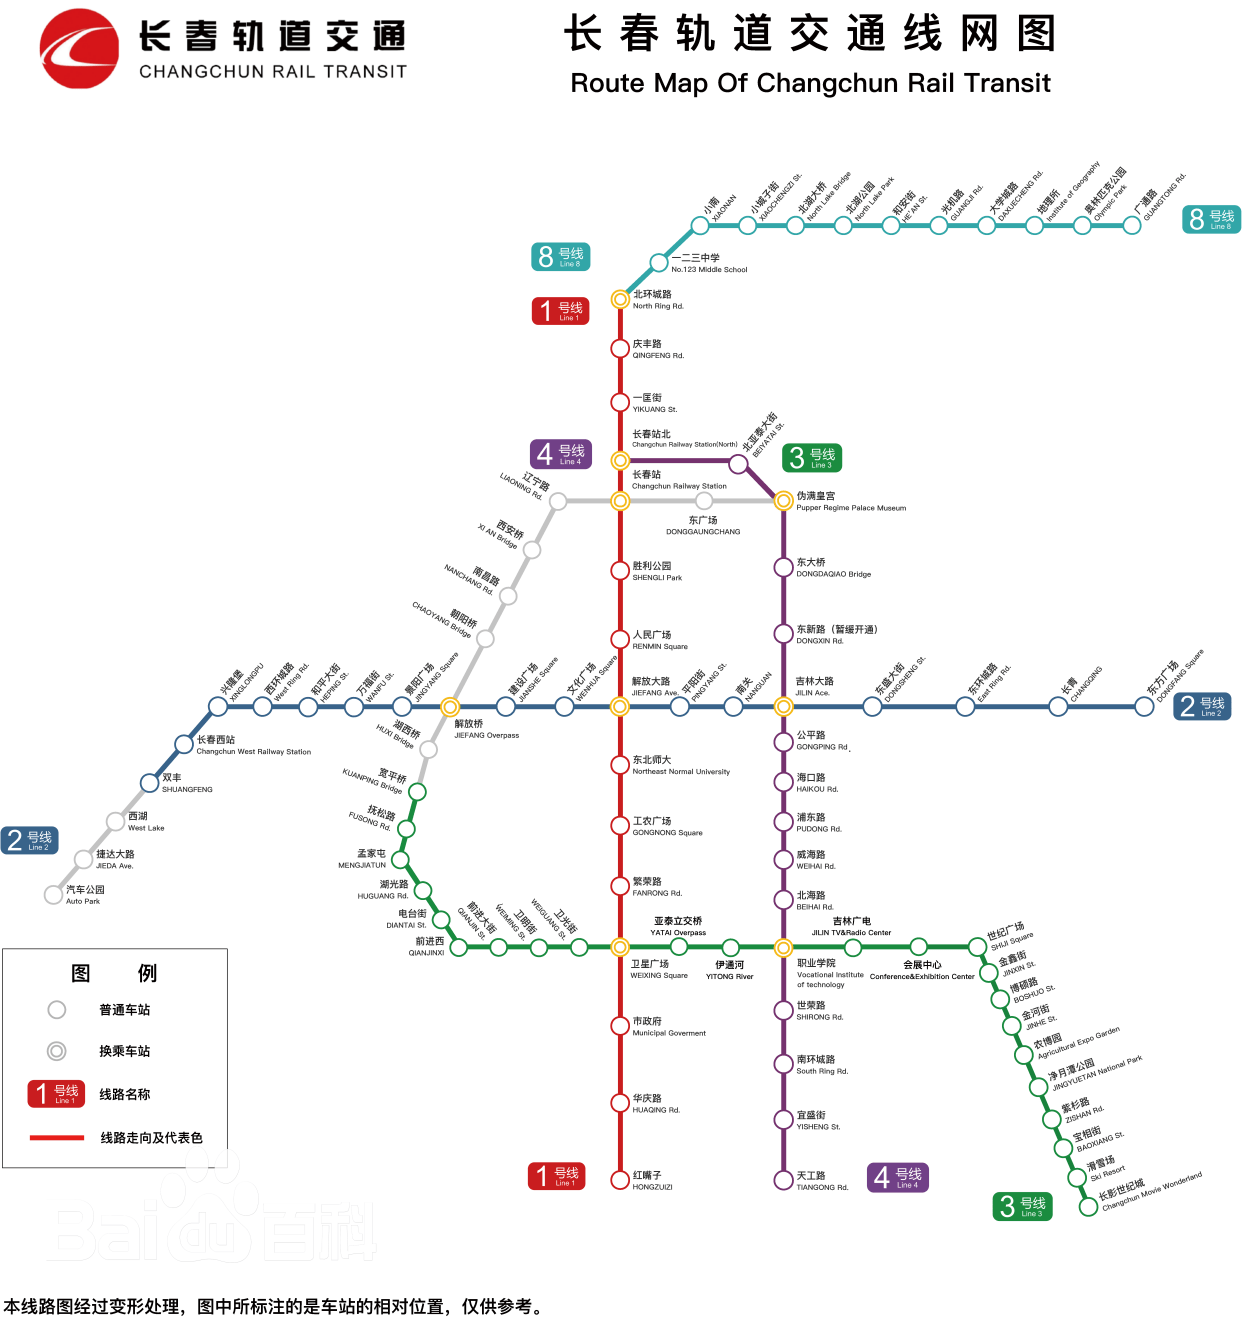 17千米,其中换乘站7座;在建线路共有9条(段),包括长春轨道交通2号线